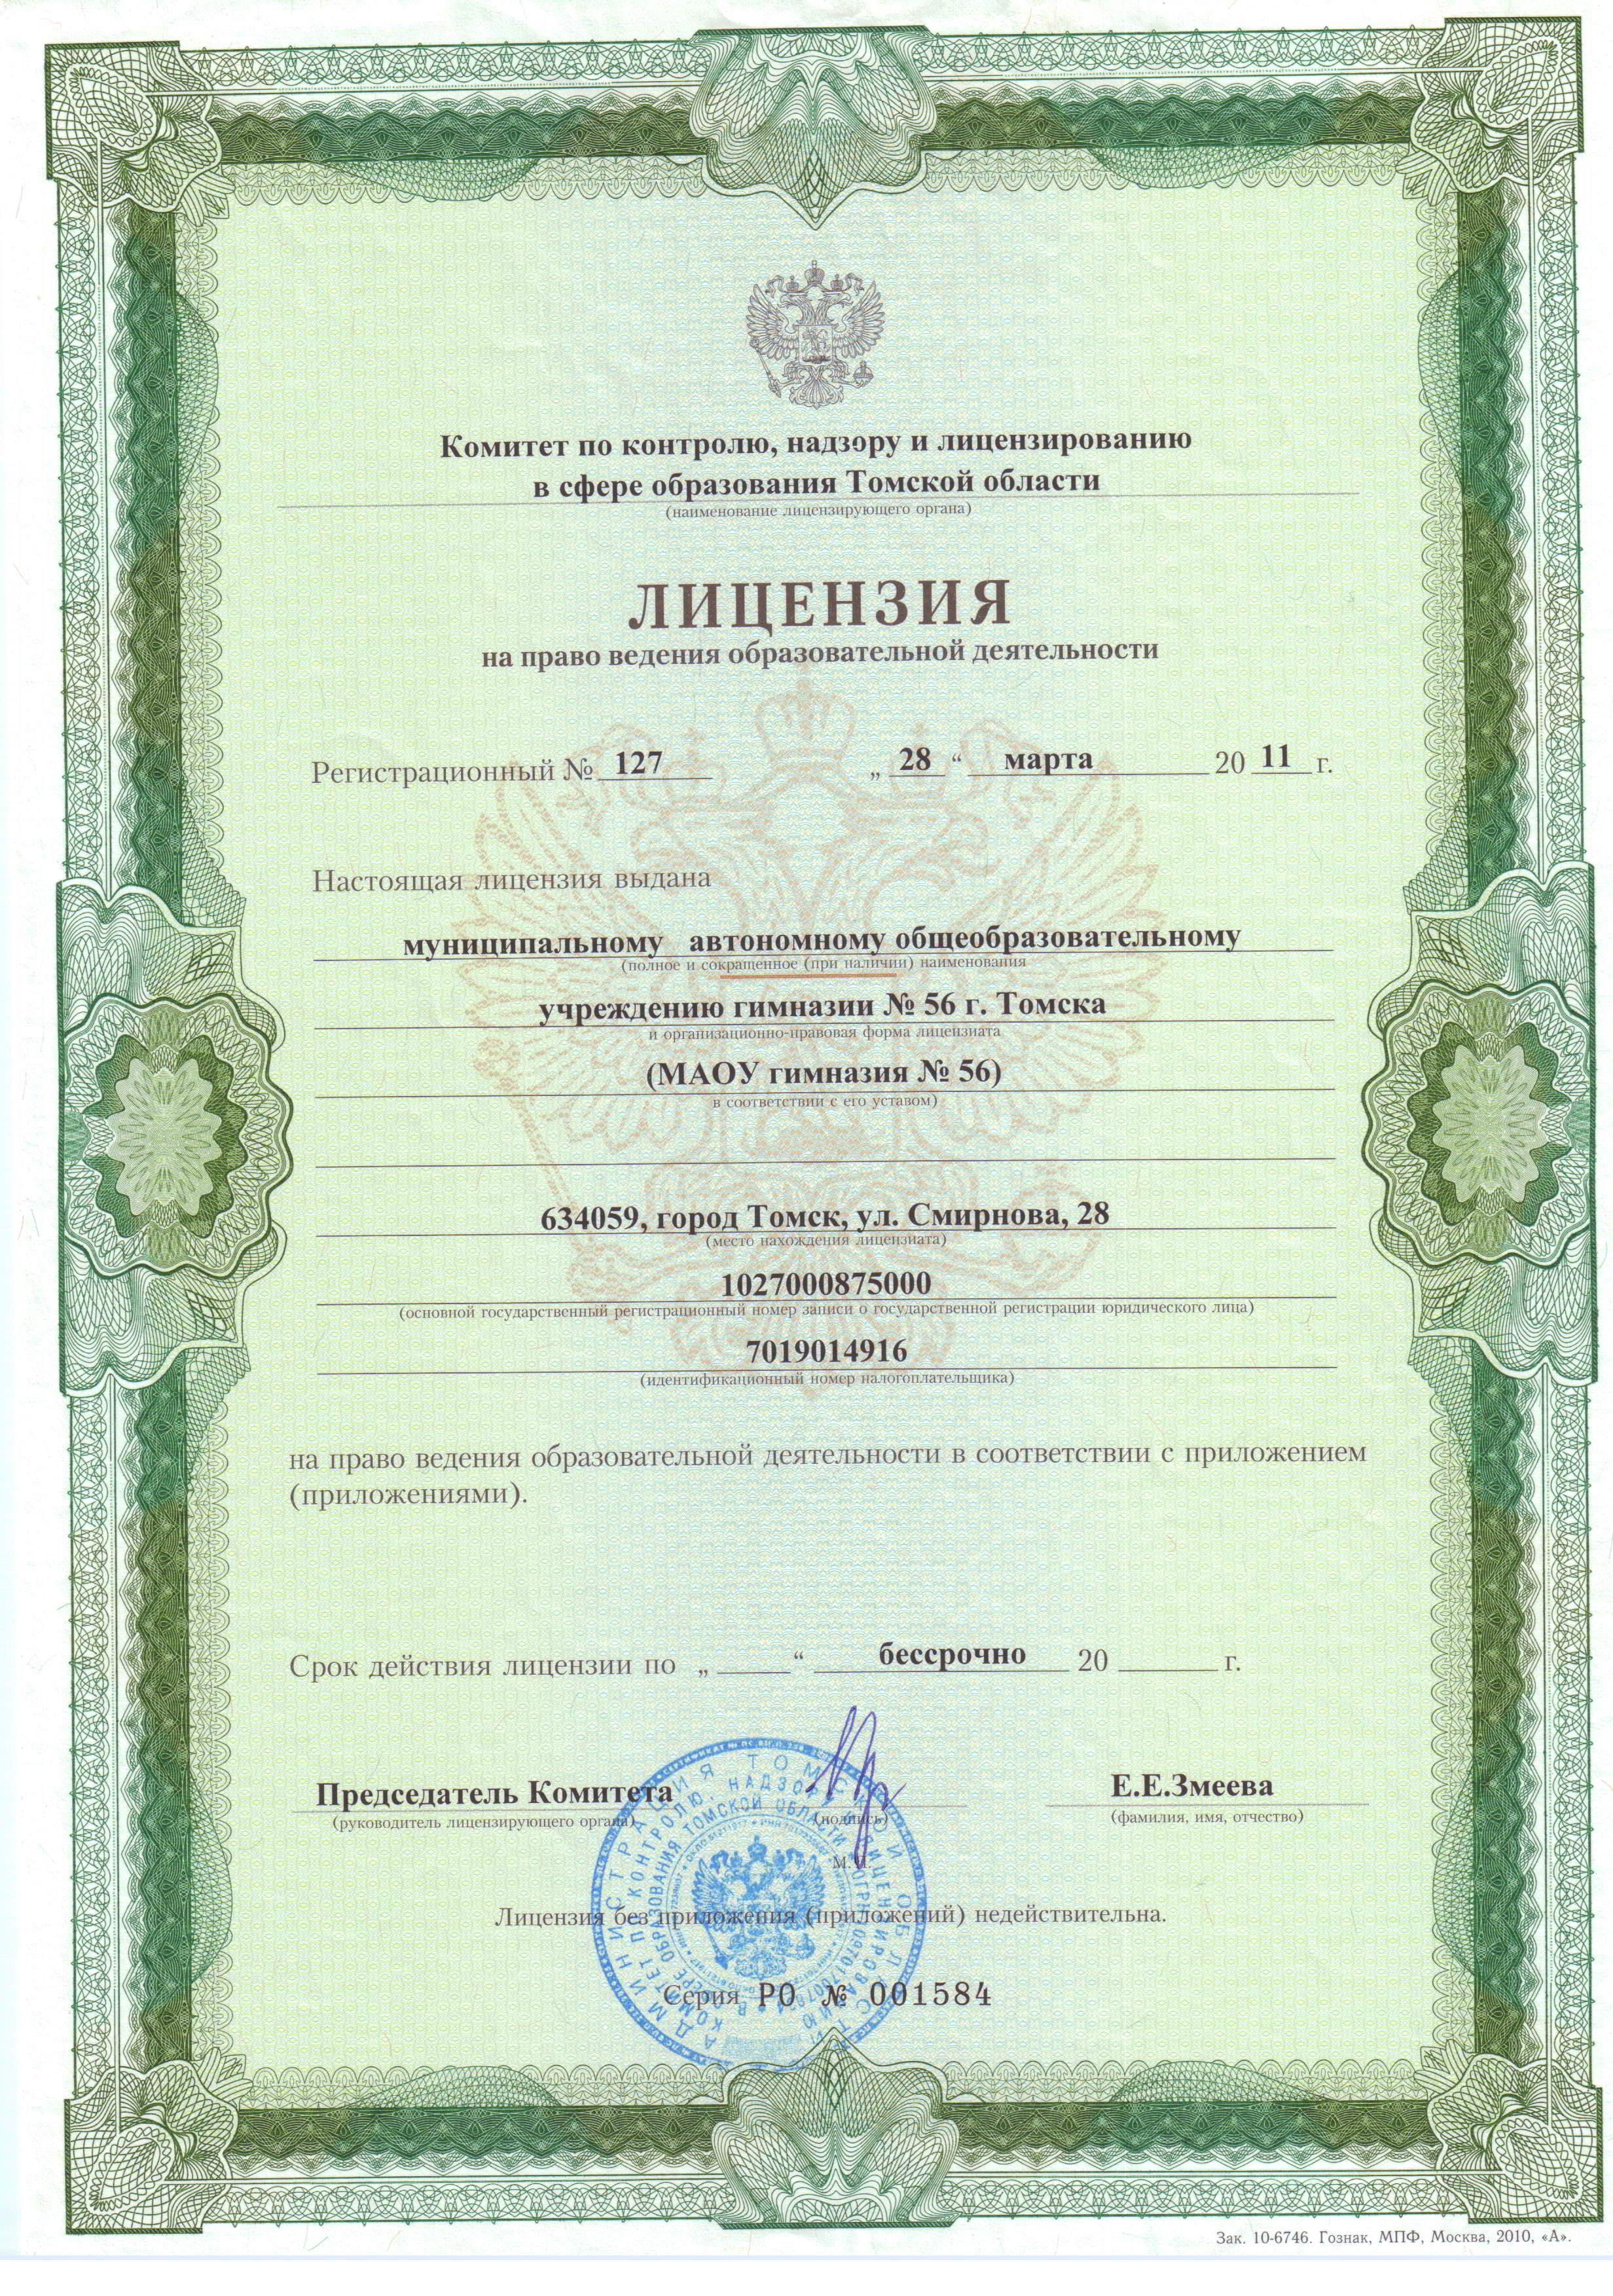 Приложение к свидетельству о государственной аккредитации от 30.03.2012.